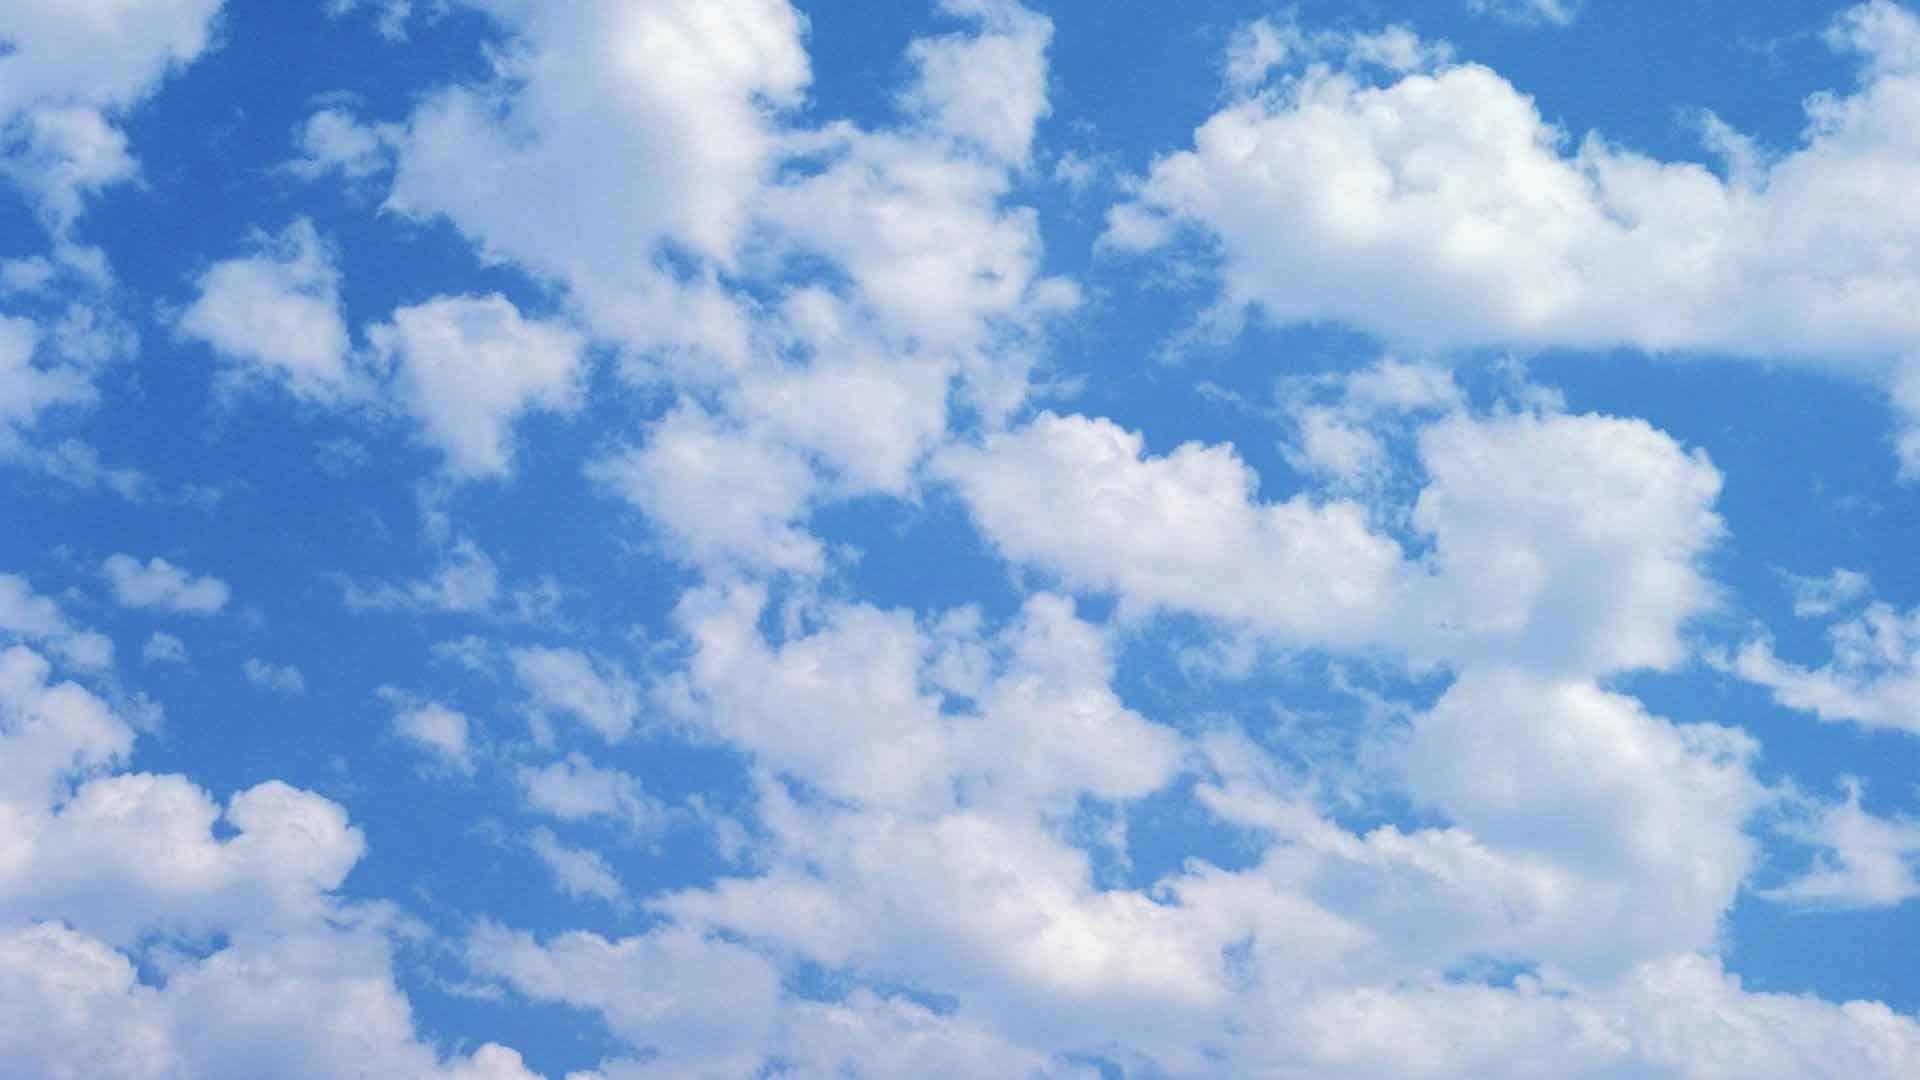 Tận hưởng không gian đám mây yên bình, hãy để mình mơ mộng với các hình nền Windows Cloud wallpapers tuyệt đẹp mà chúng tôi đem đến cho bạn!